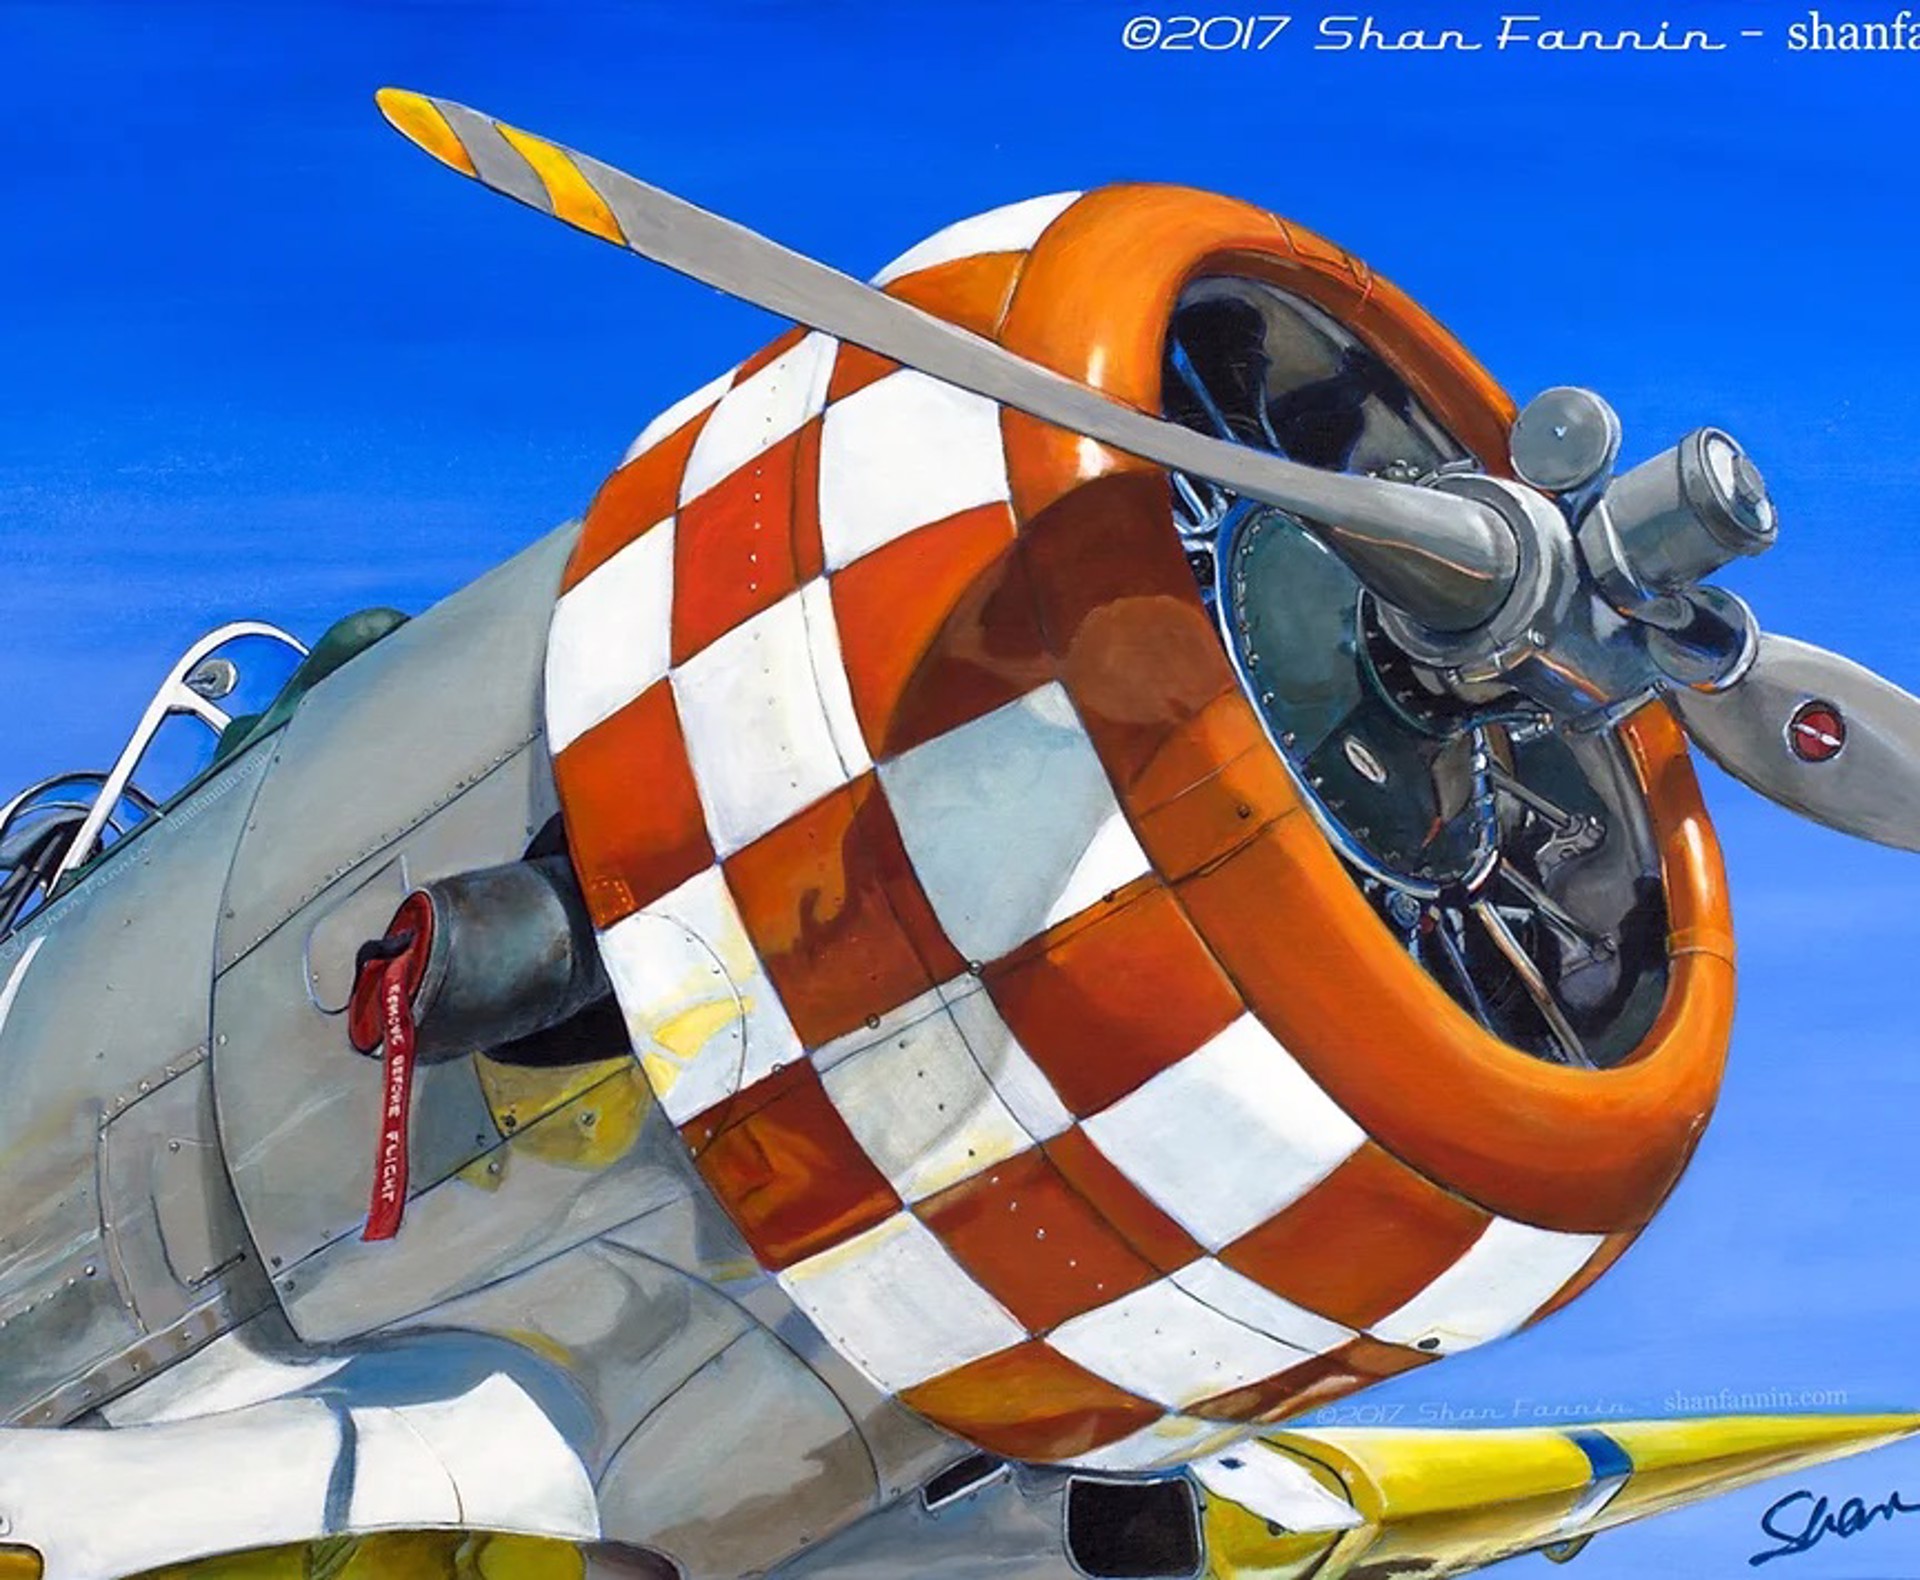 1944 T6 Texan World War II Era Airplane by Shan Fannin